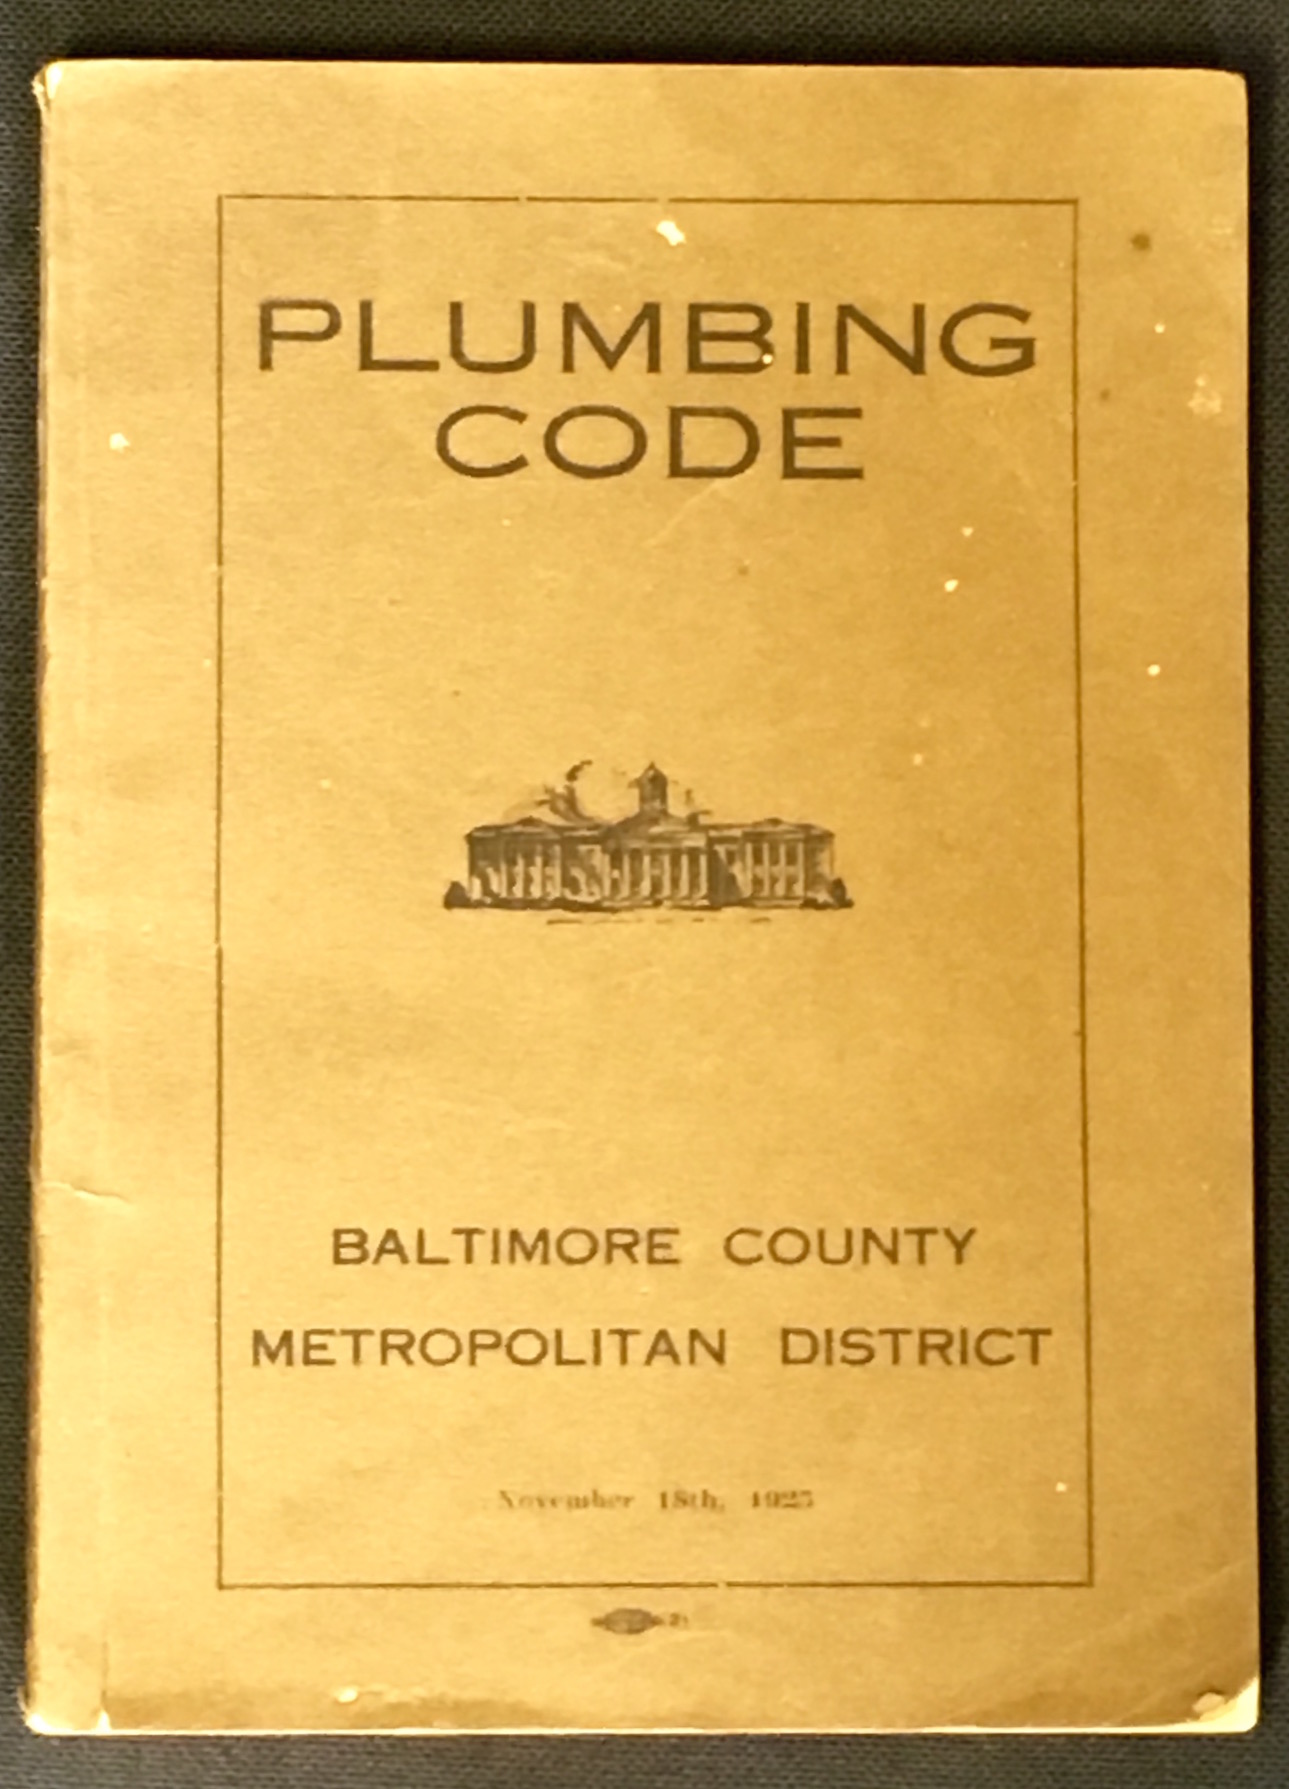 Plumbing code from 1925.